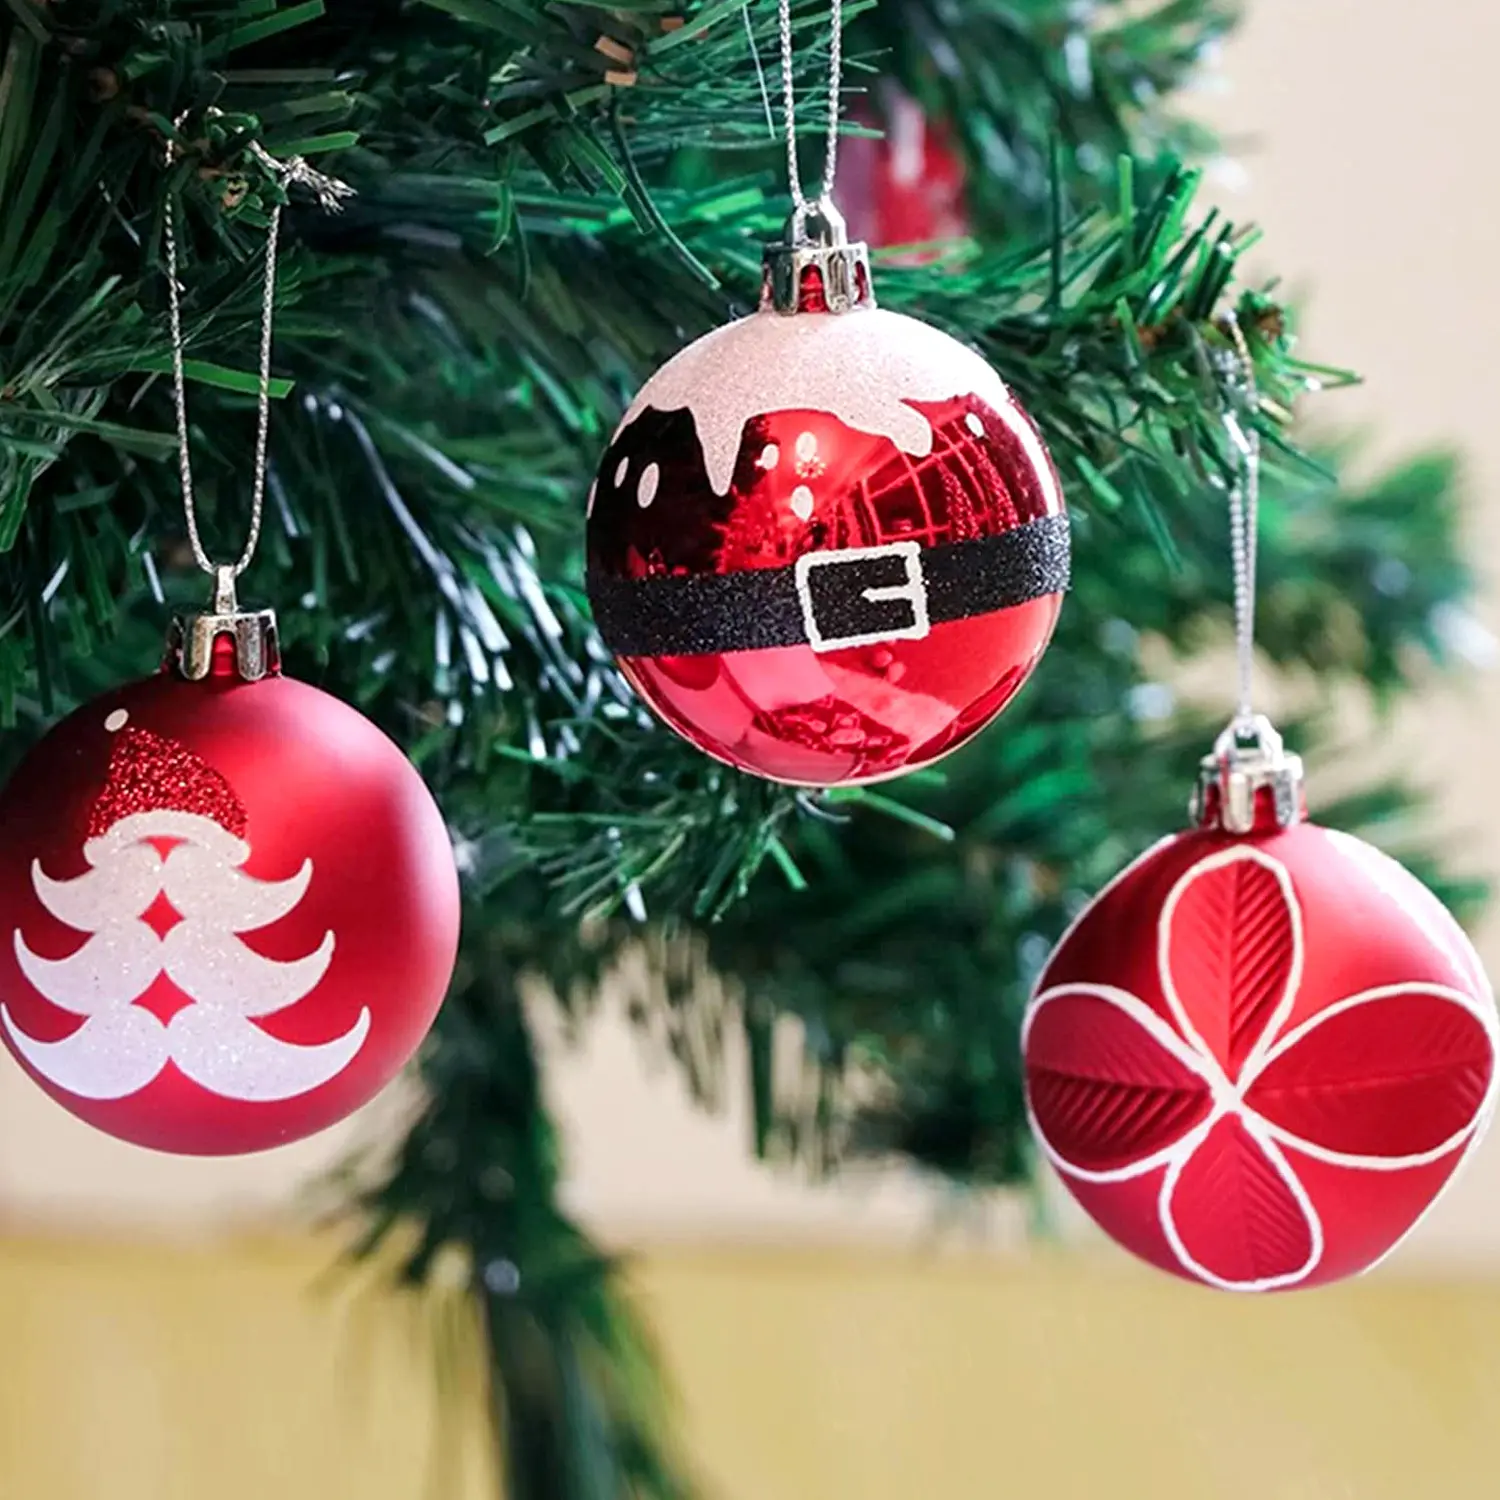 Natale all'ingrosso boules de noel 6cm Set di 9 pezzi palline di natale dipinte colorate palline rosse dell'albero di natale per decorazioni natalizie